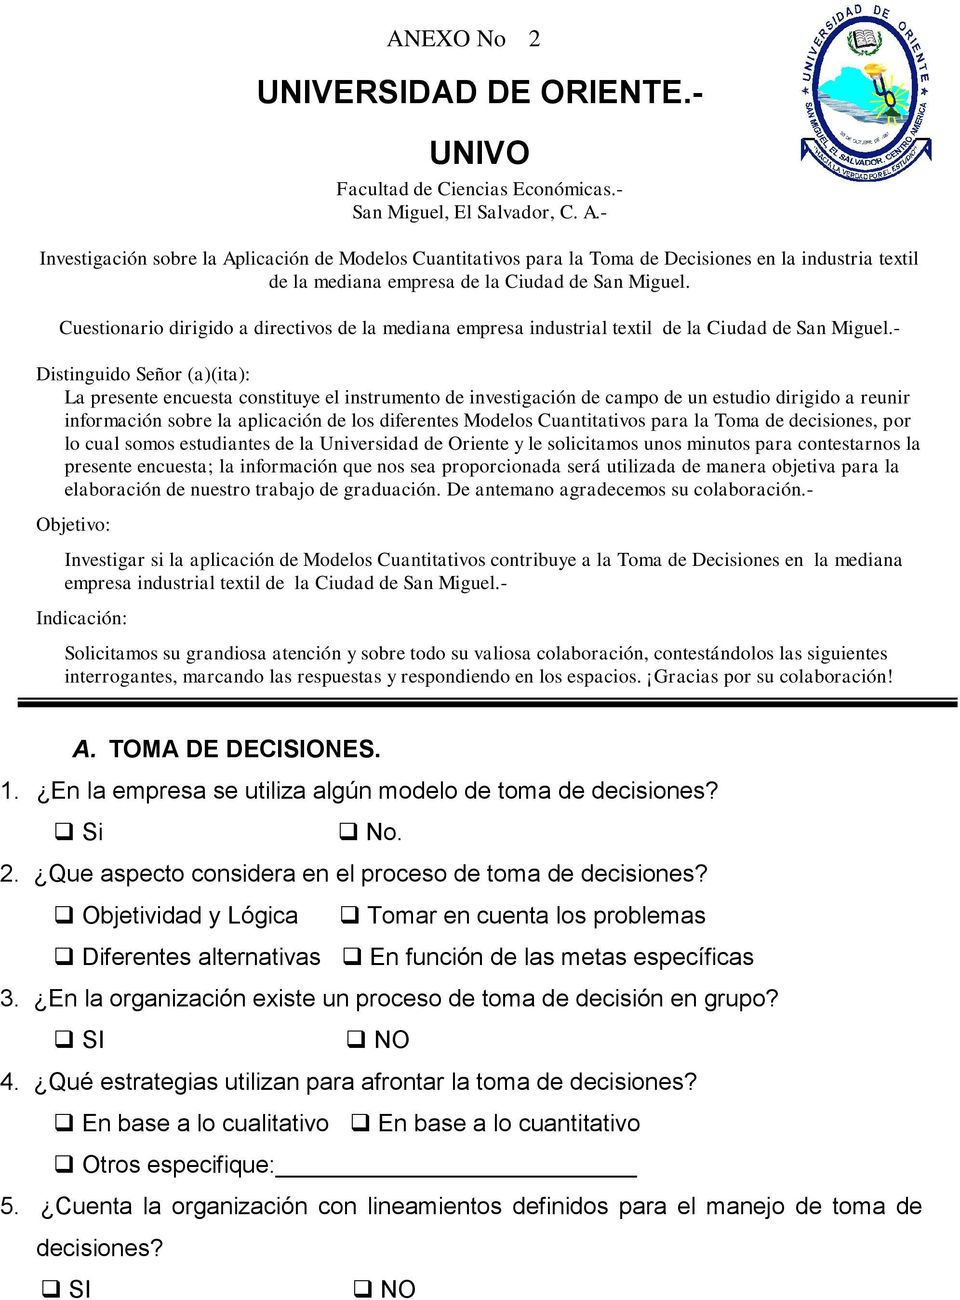 Cuestionario dirigido a directivos de la mediana empresa industrial textil de la Ciudad de San Miguel.